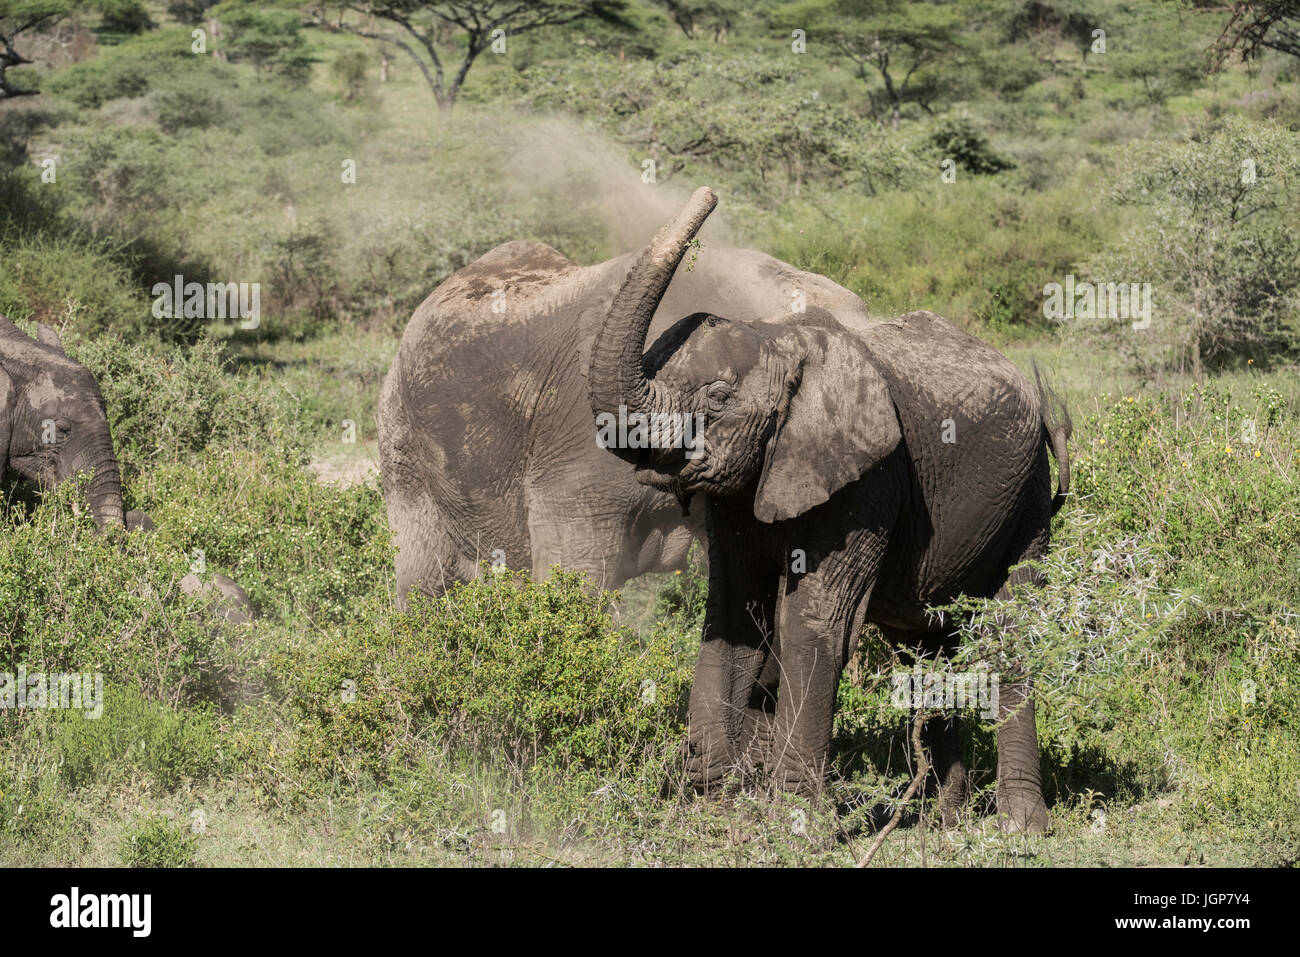 Elephant dusting, Tanzania Stock Photo